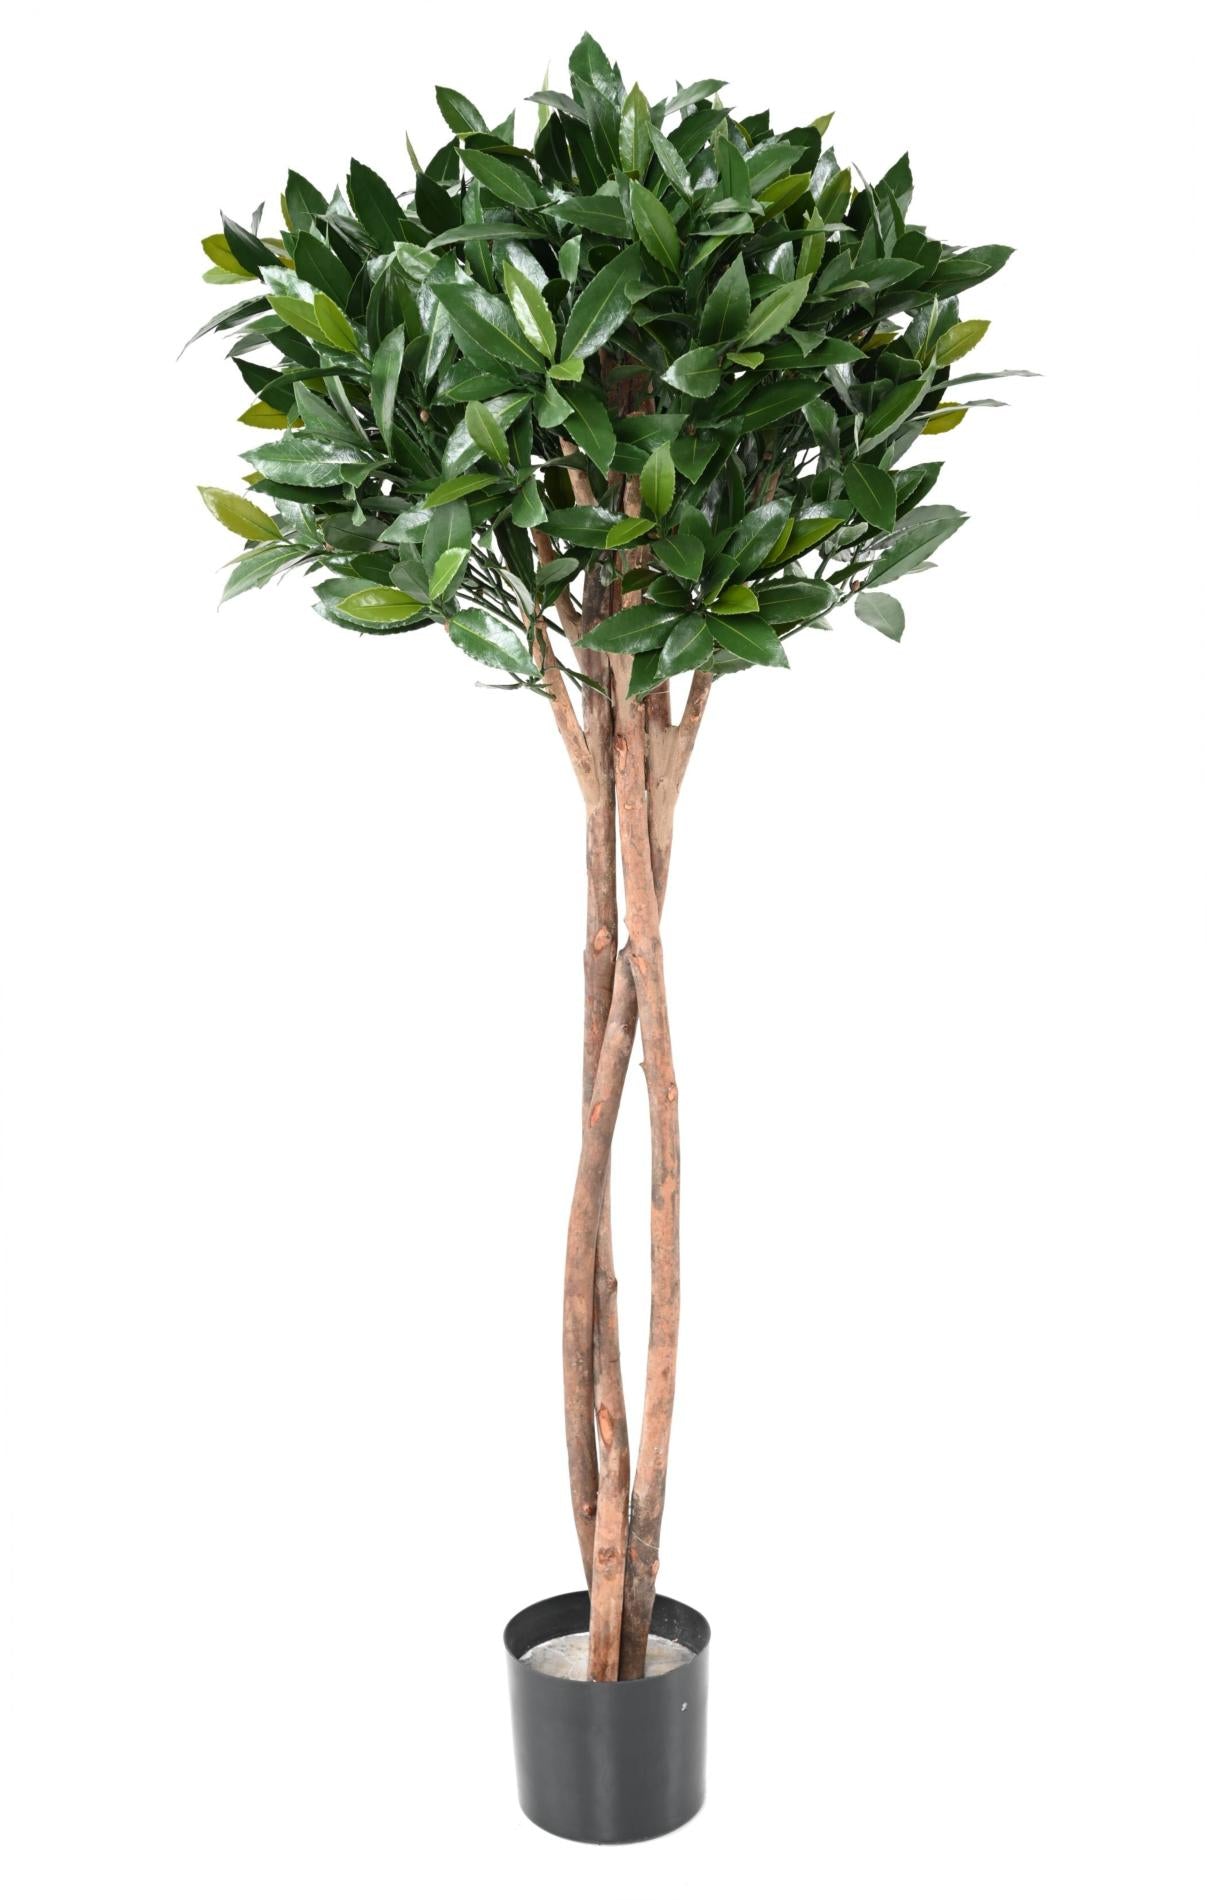 Plante artificielle Laurier Nobilis UV résistant - intérieur extérieur - H.130cm vert